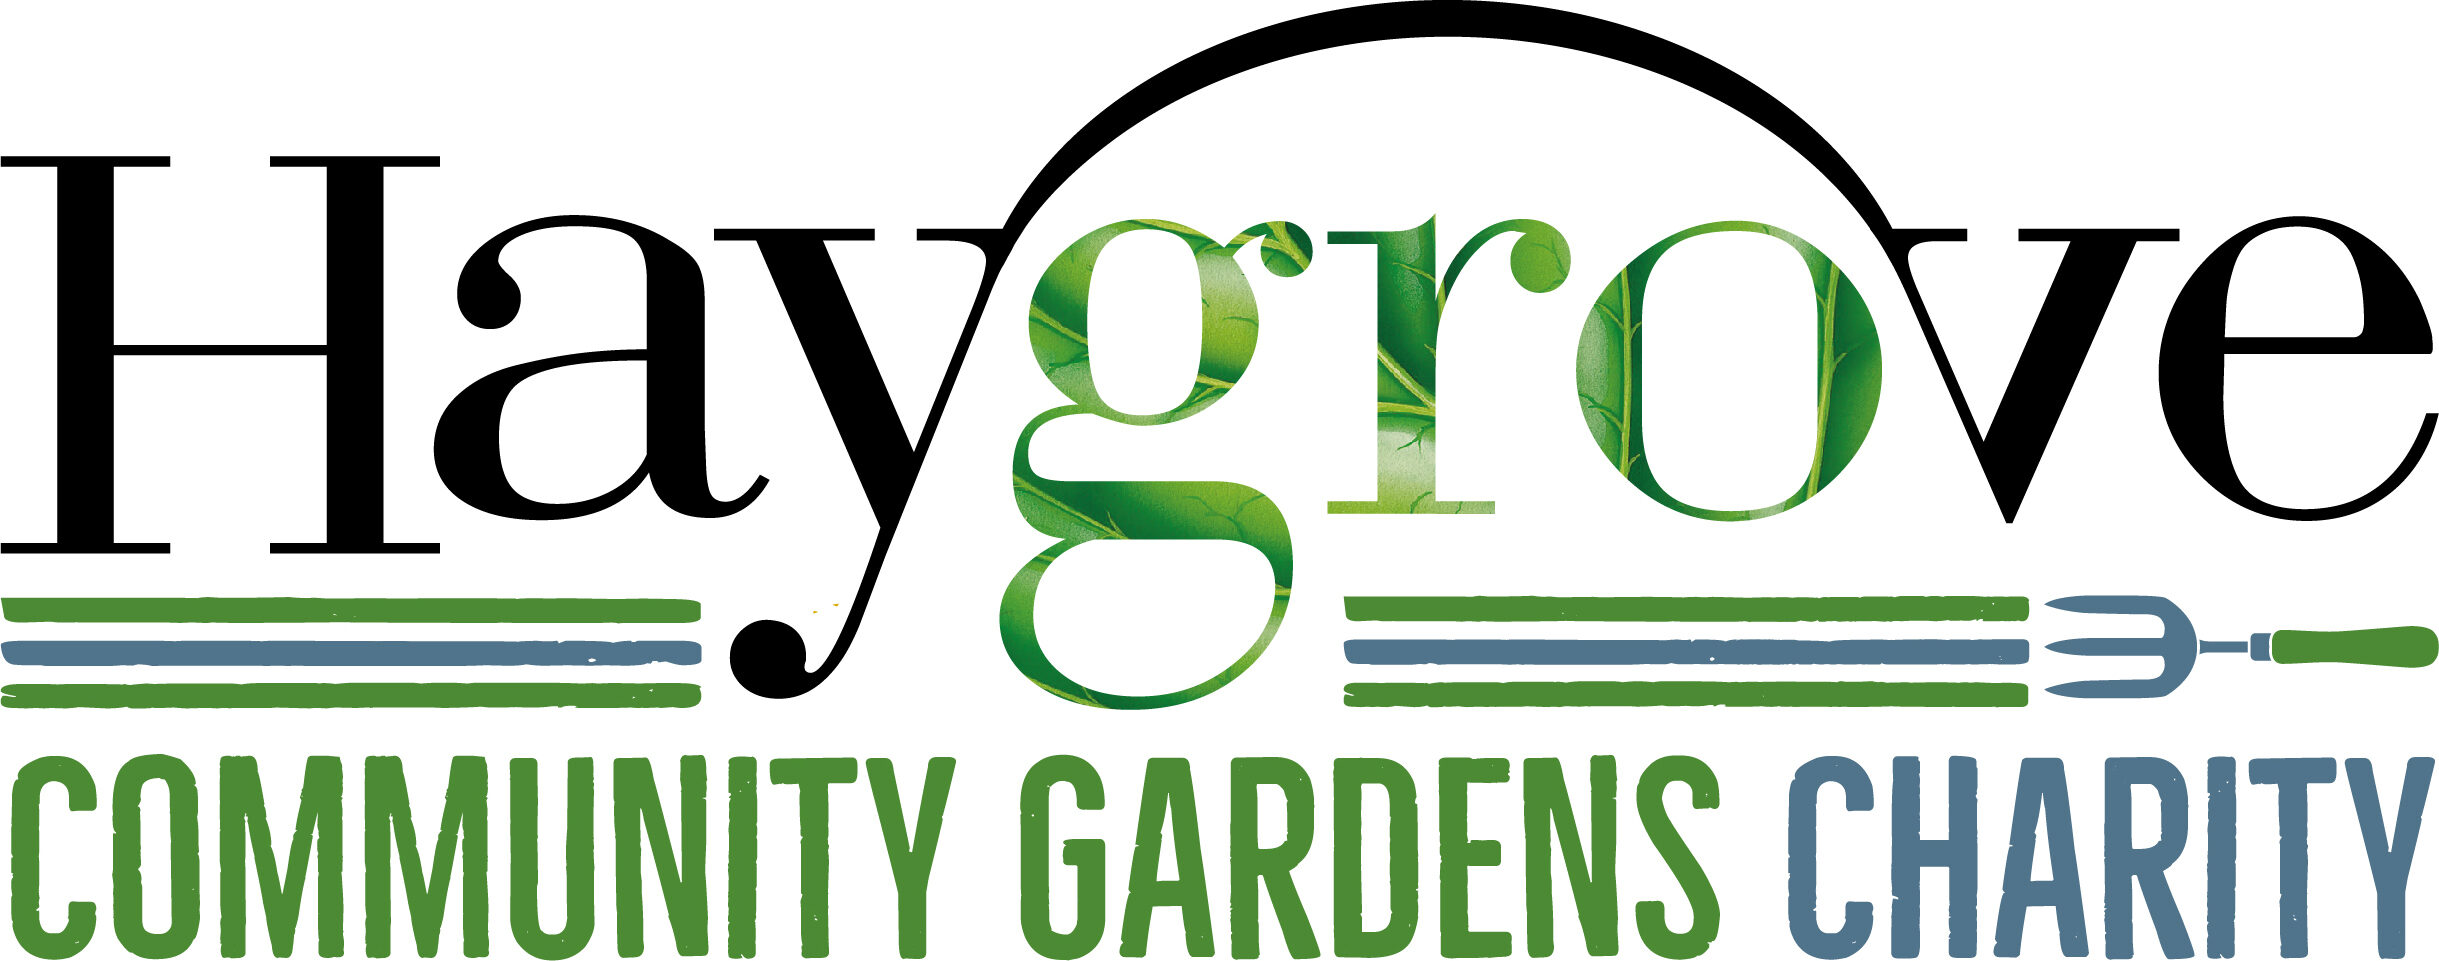 Haygrove Community Gardens